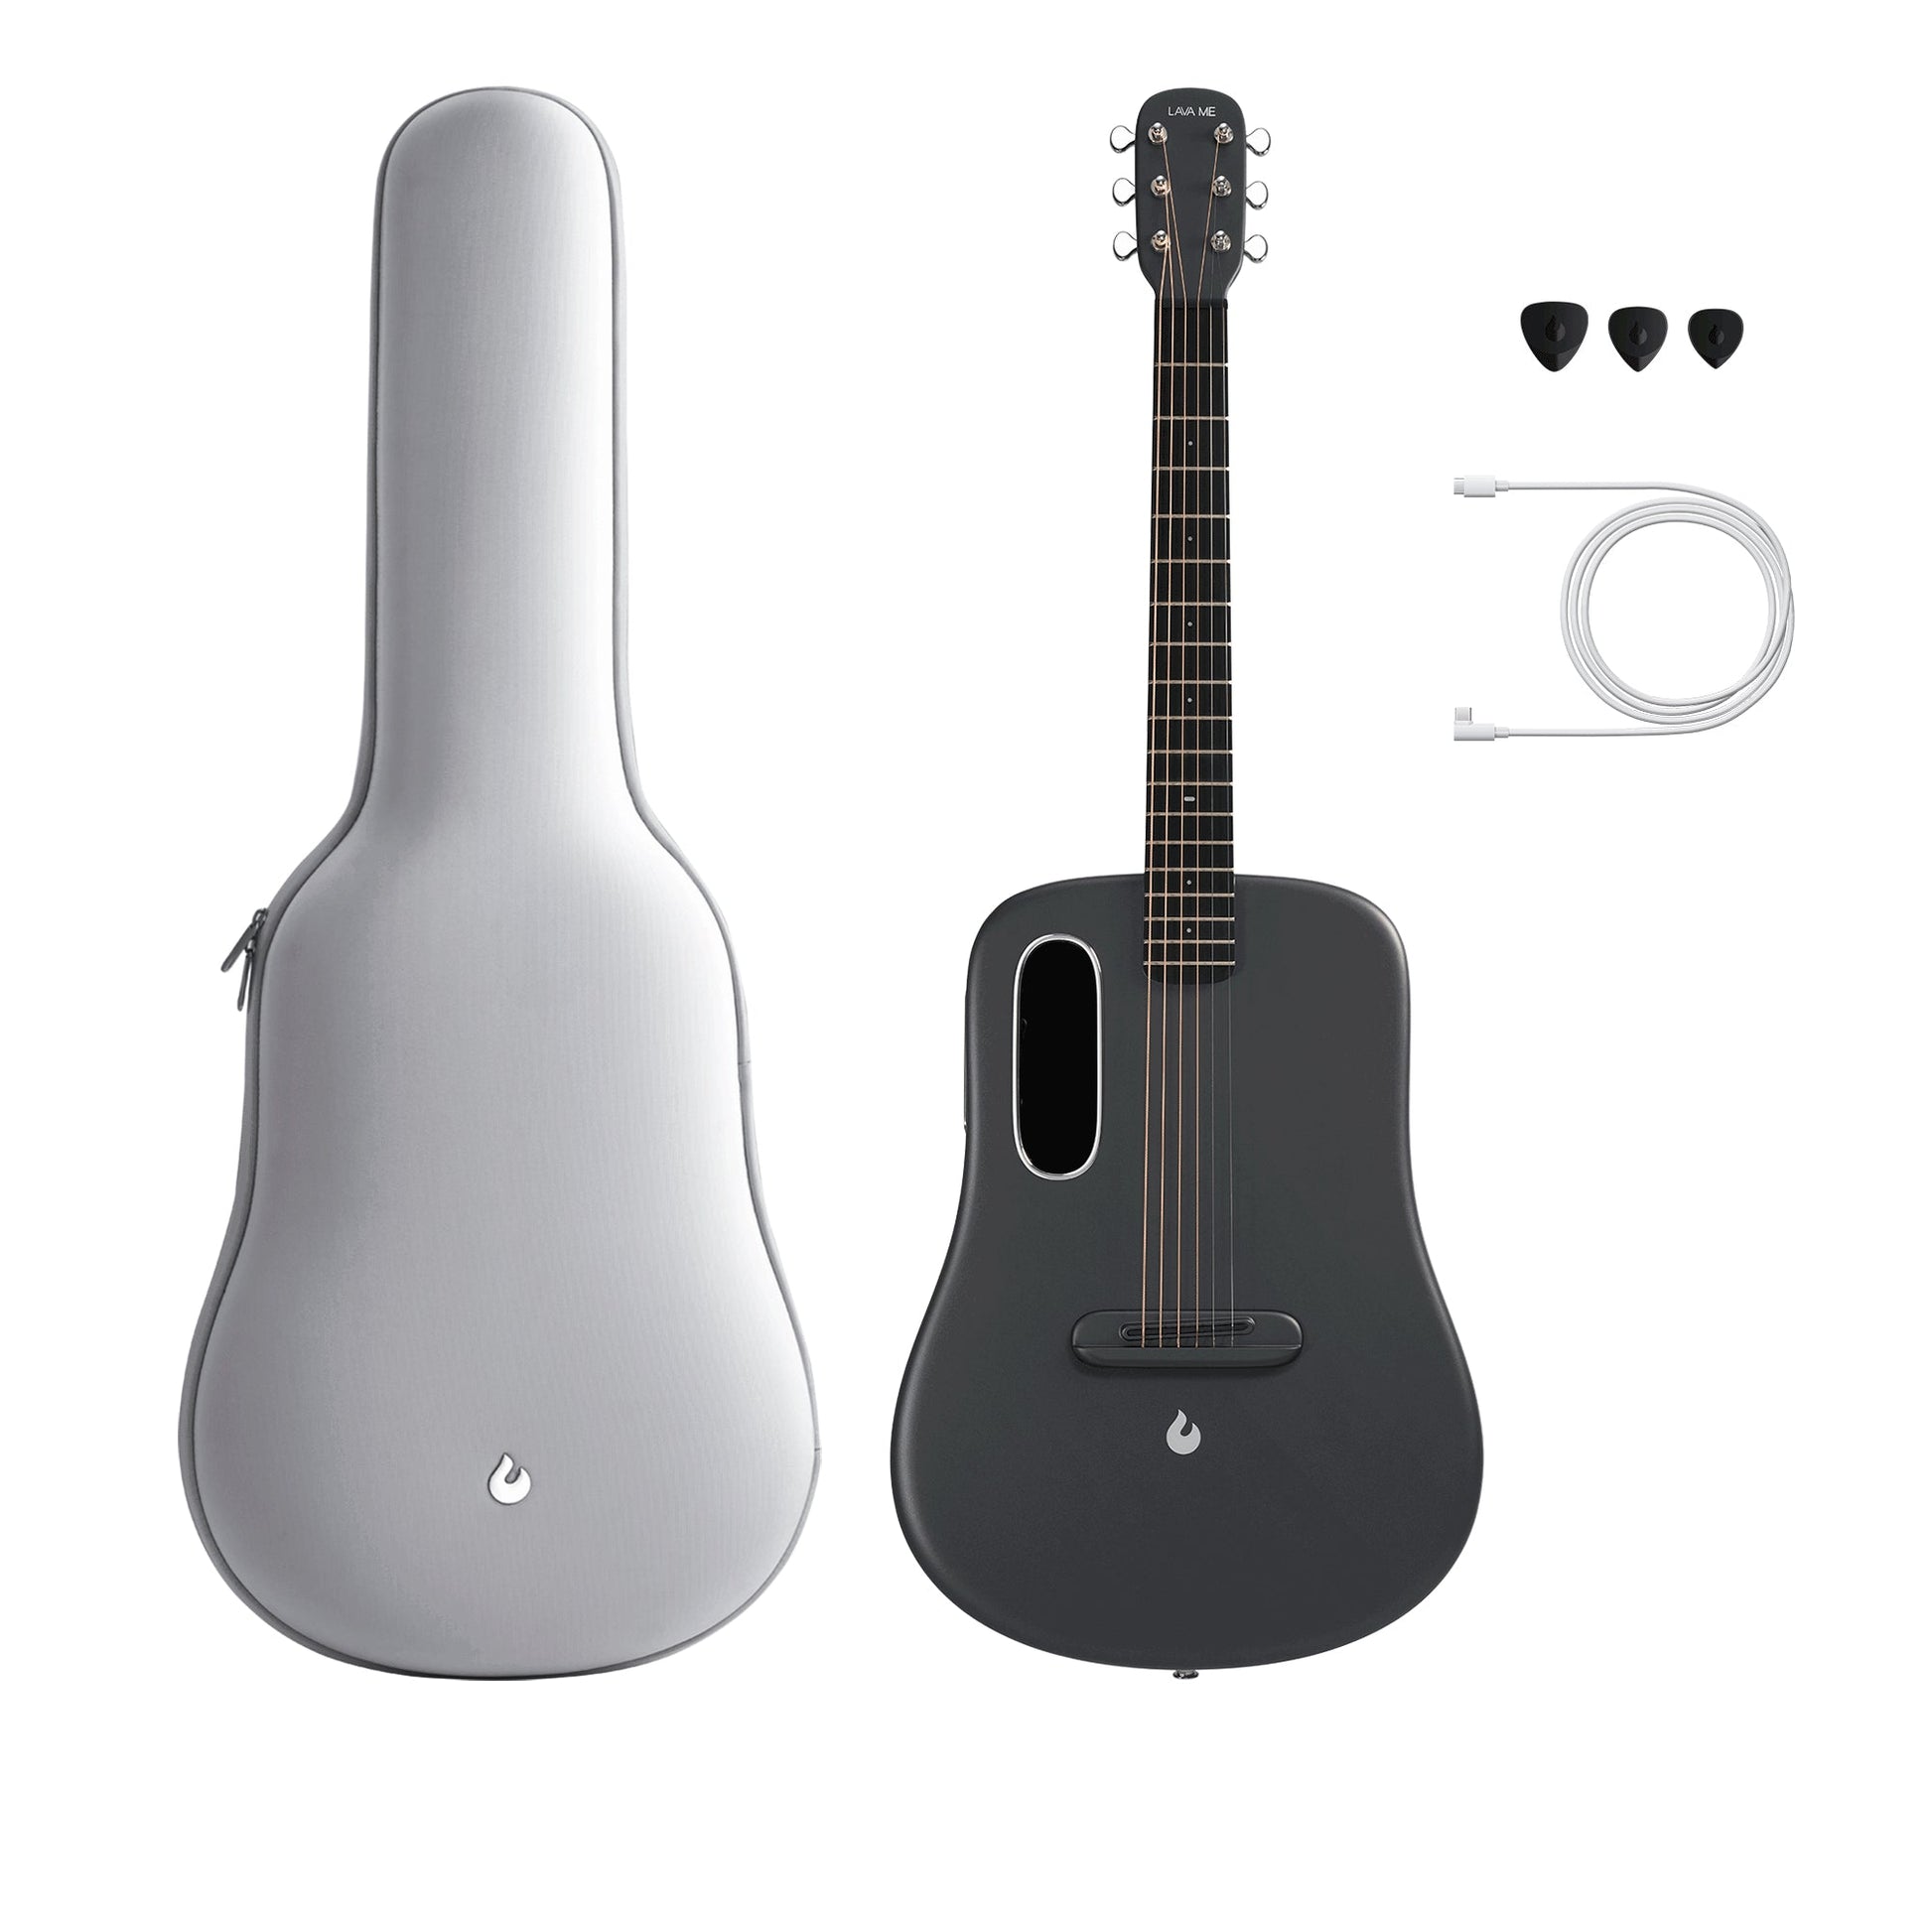 Đàn Guitar Acoustic Lava Me 3 - Size 36, Space Gray - Việt Music